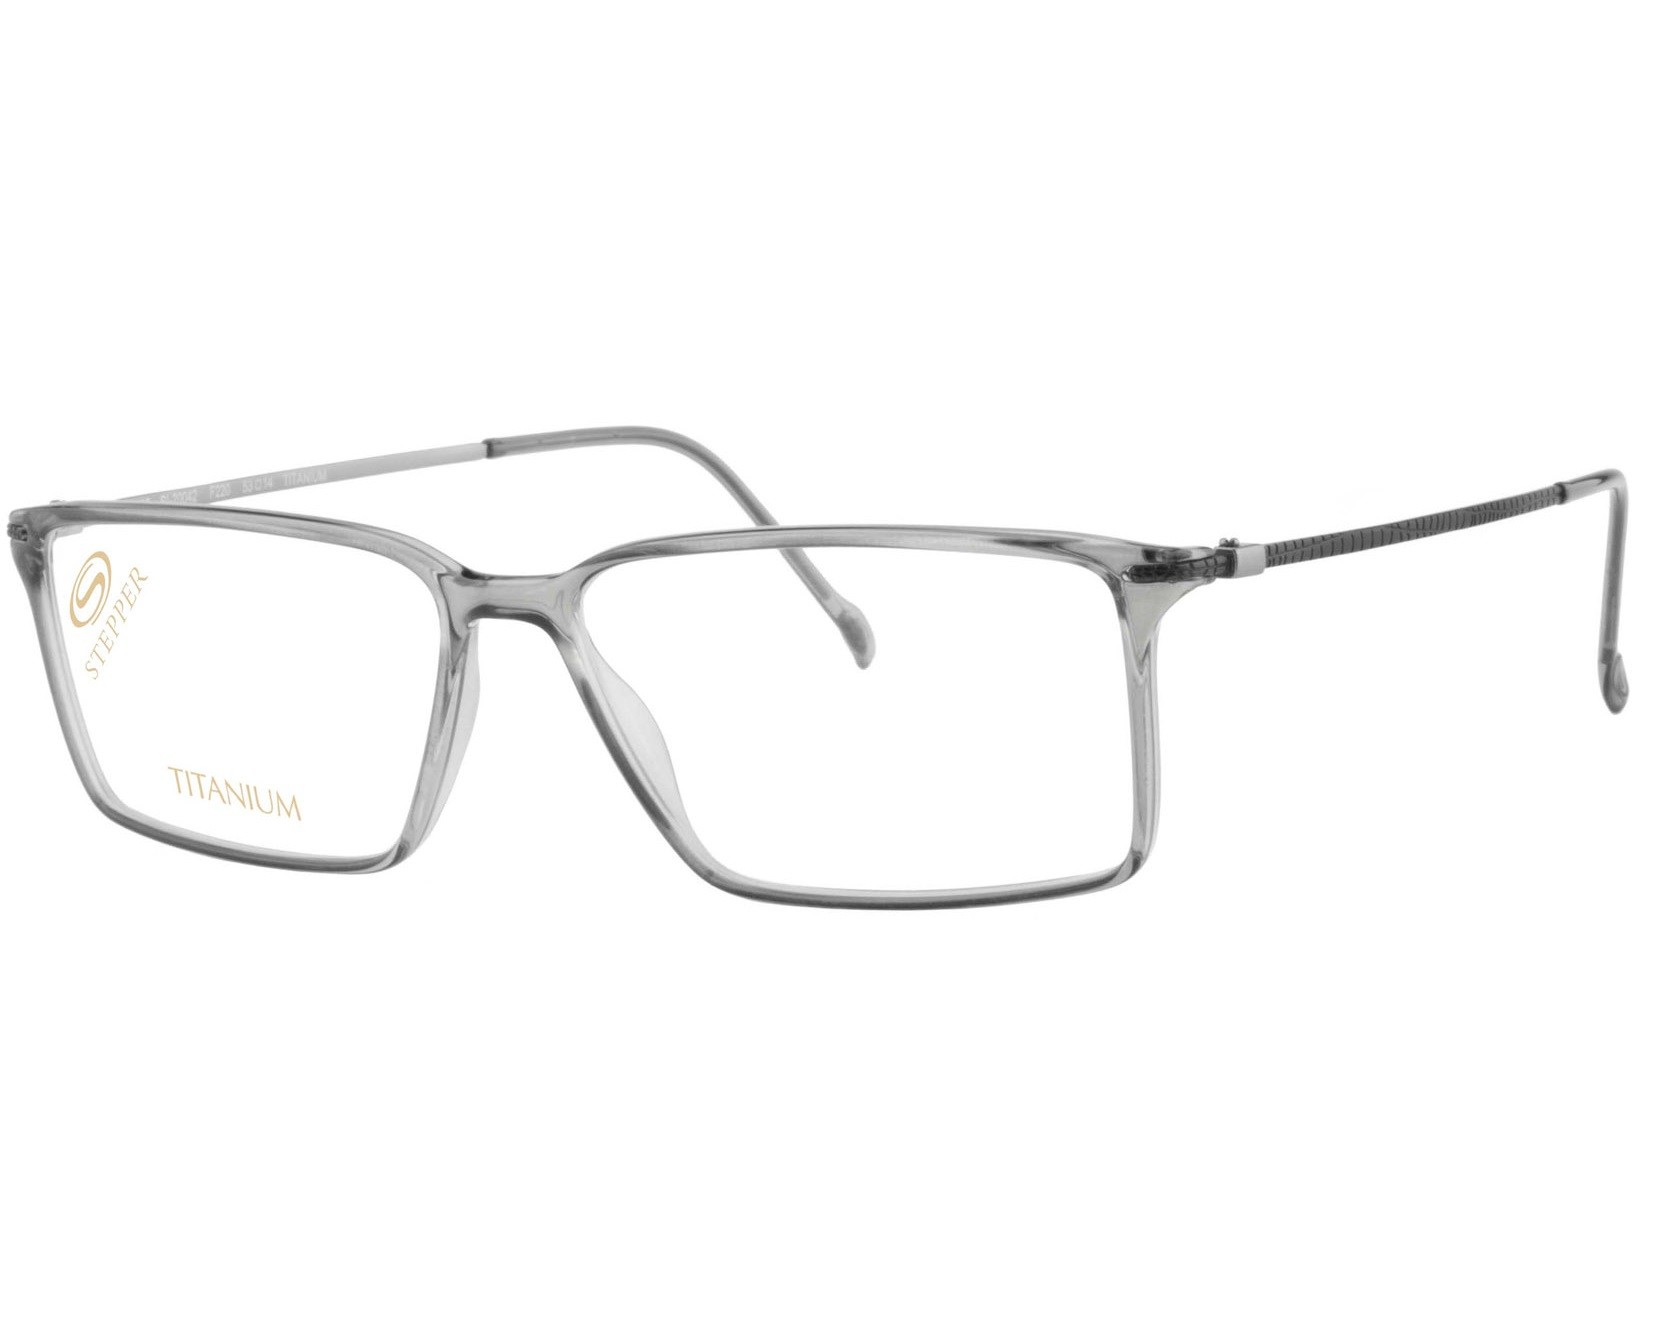 Stepper 20042 220 - Oculos de Grau